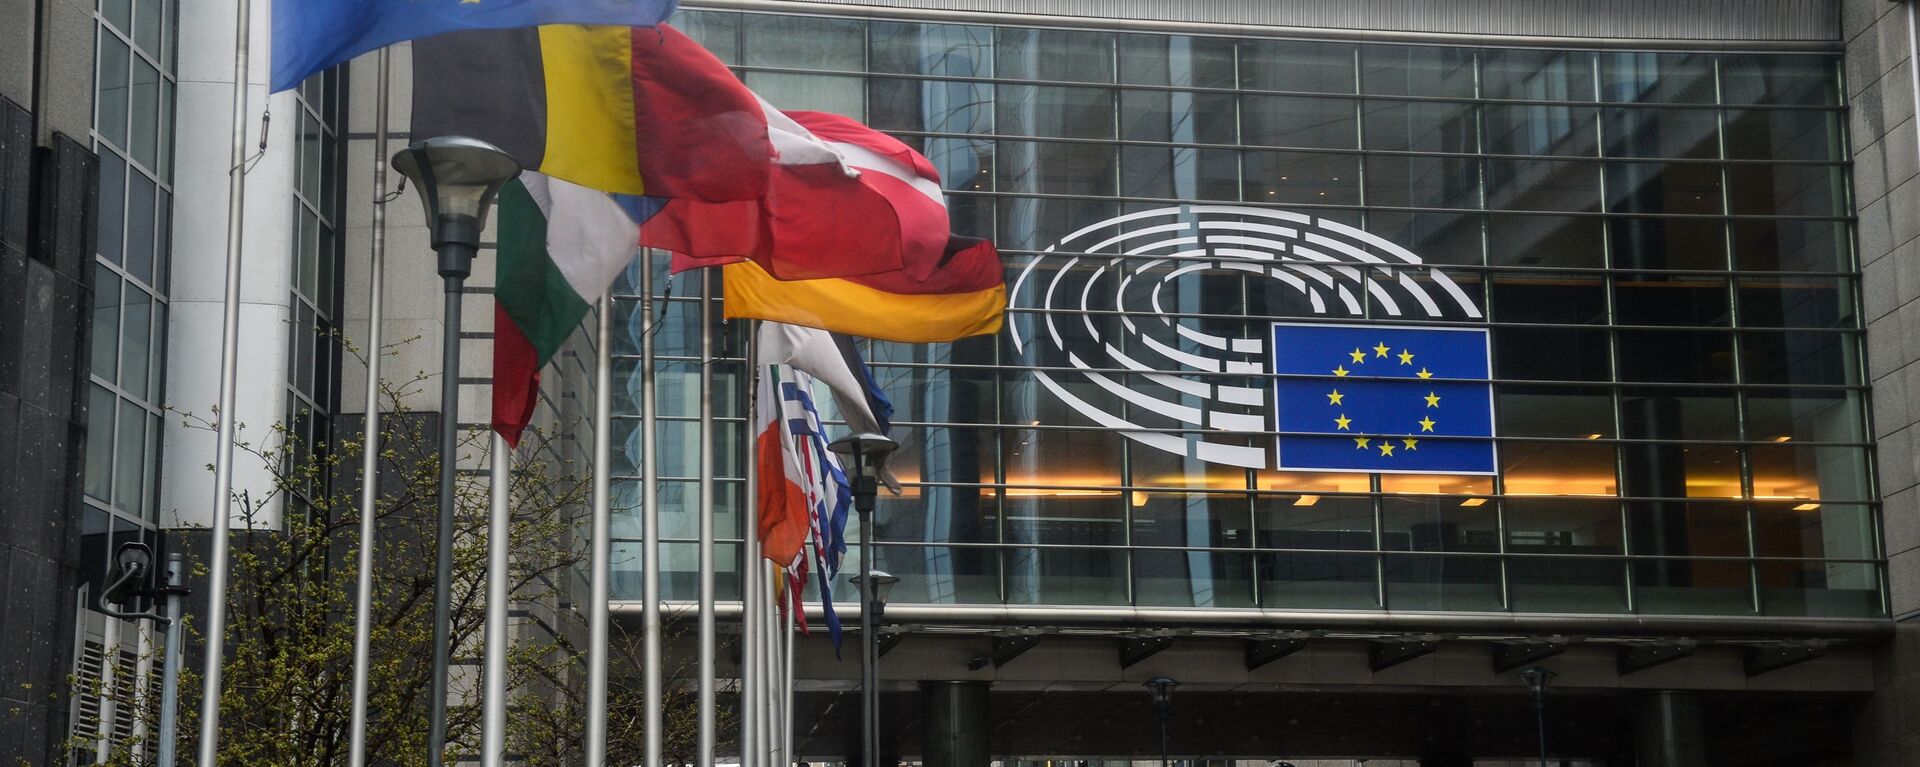 Sede del Parlamento Europeo en Estrasburgo - Sputnik Mundo, 1920, 10.06.2021